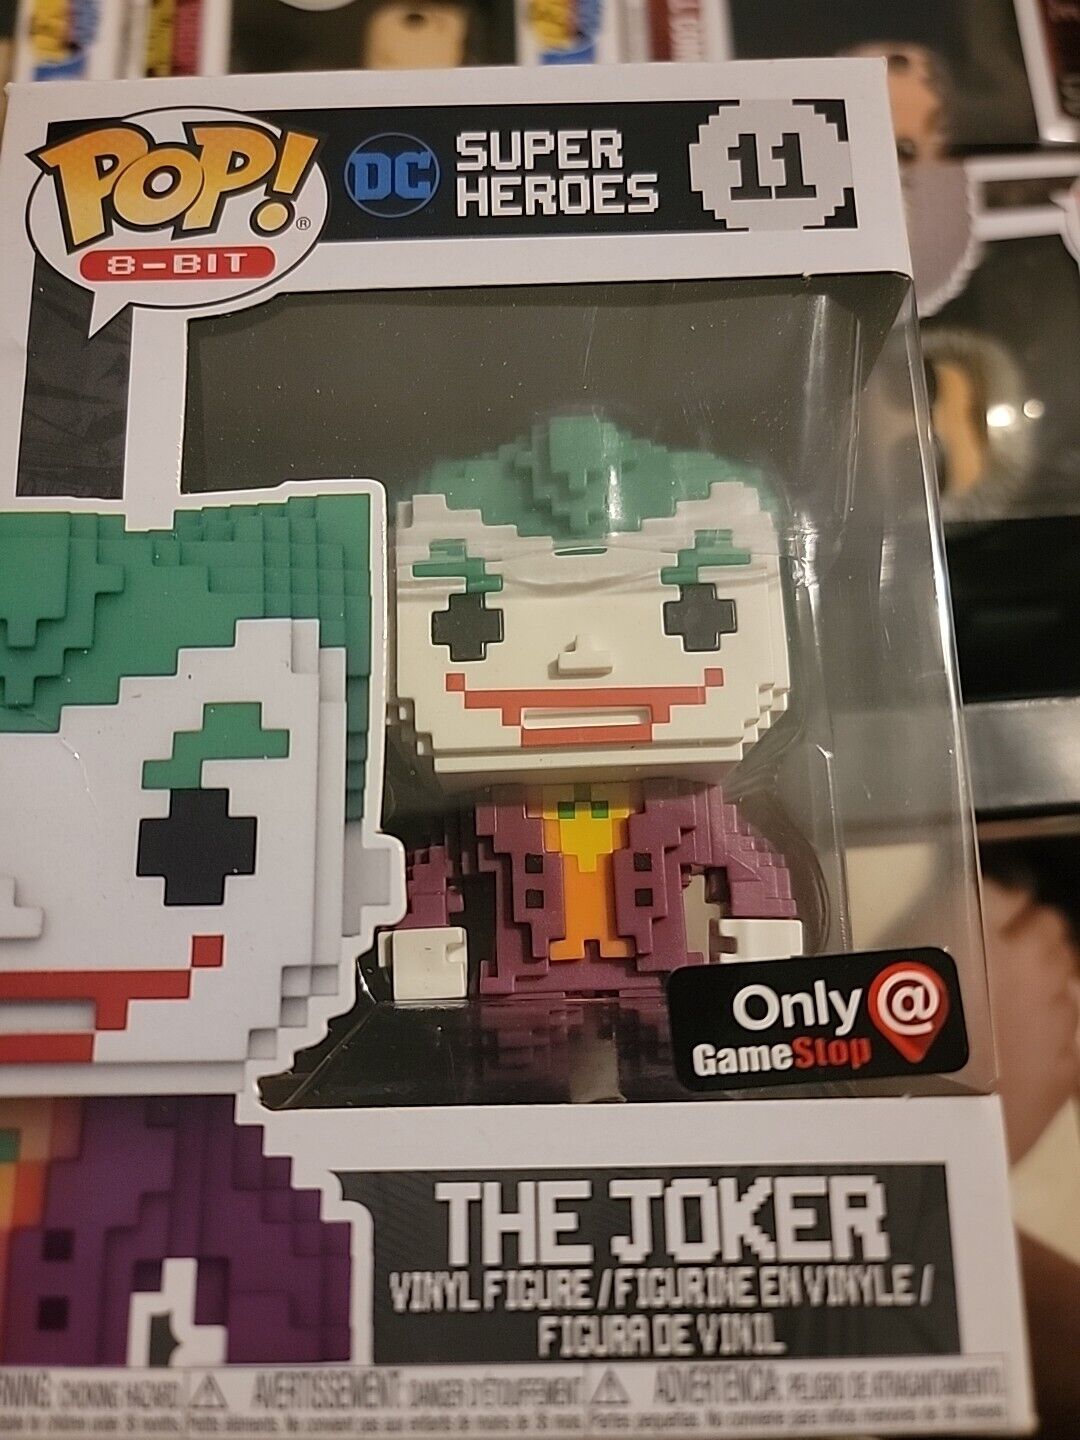 New Funko Pop 8-Bit DC Super Heroes The Joker #11 Game Stop Exclusive J9